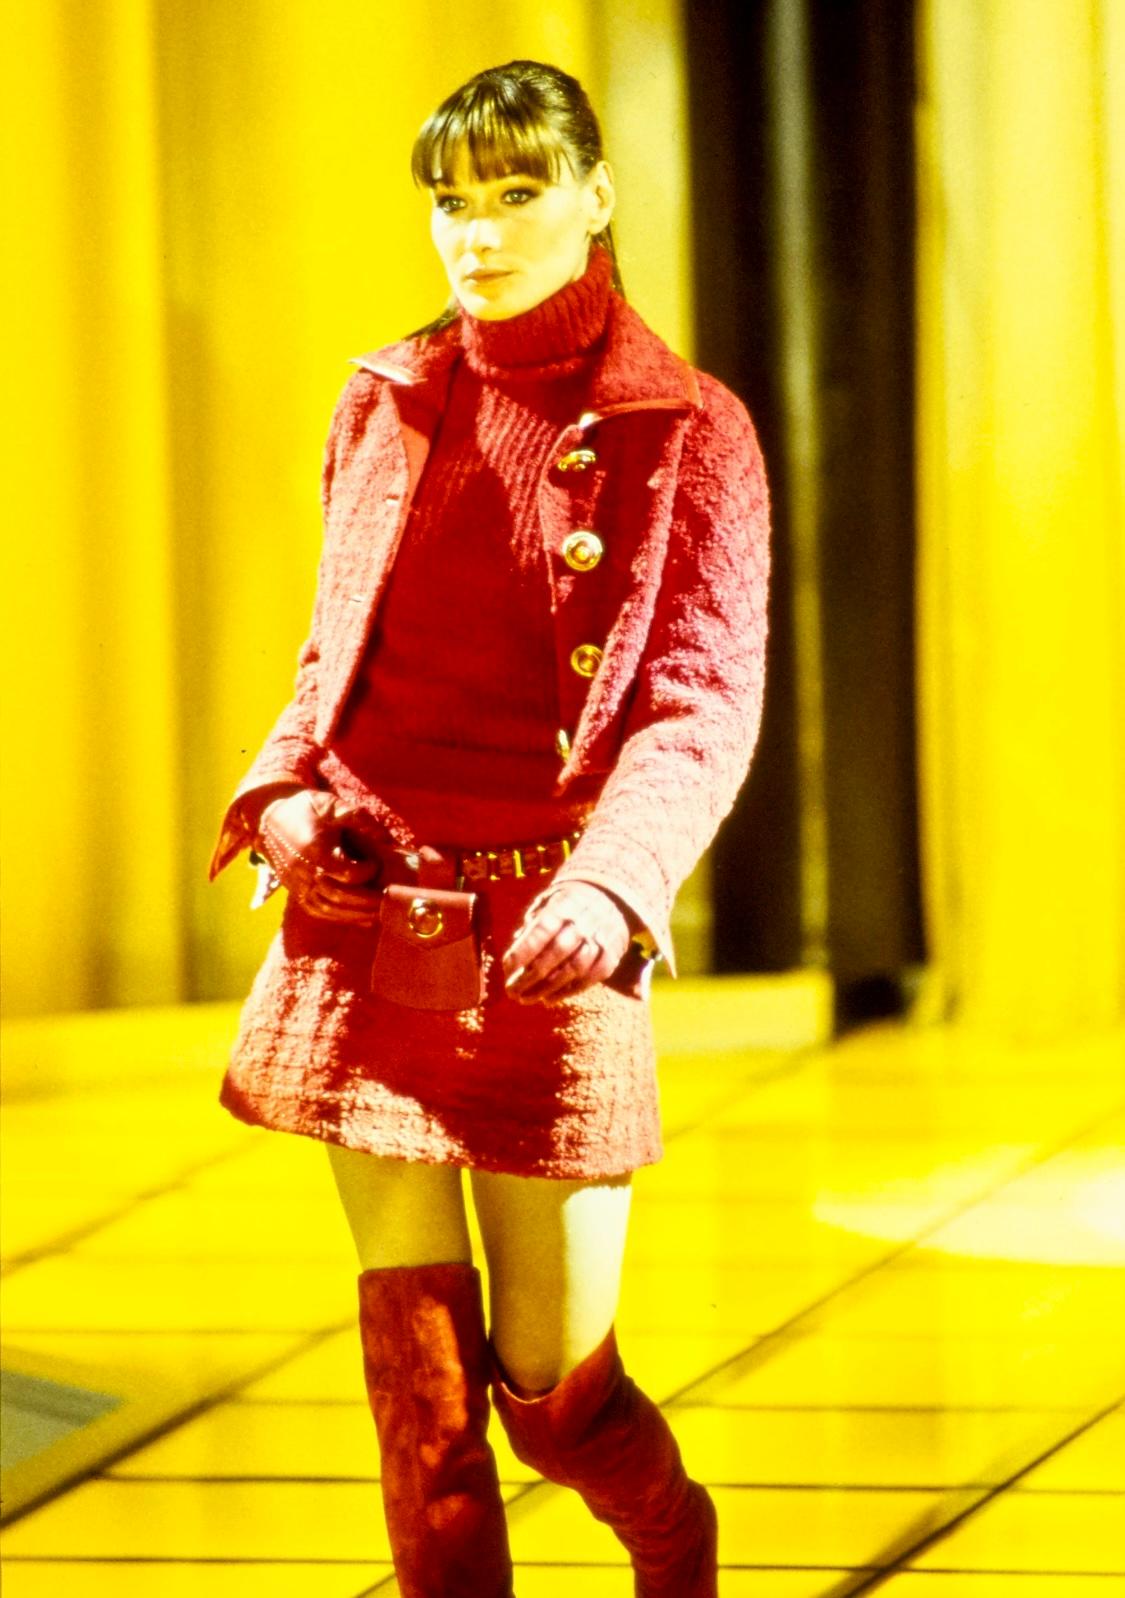 Wir präsentieren einen leuchtend roten Tweed-Blazer von Gianni Versace Couture, entworfen von Gianni Versace. Dieser Blazer aus der Herbst/Winter-Kollektion 1994 wurde erstmals in Look 5 von Carla Bruni und in der Werbekampagne der Saison von Cindy